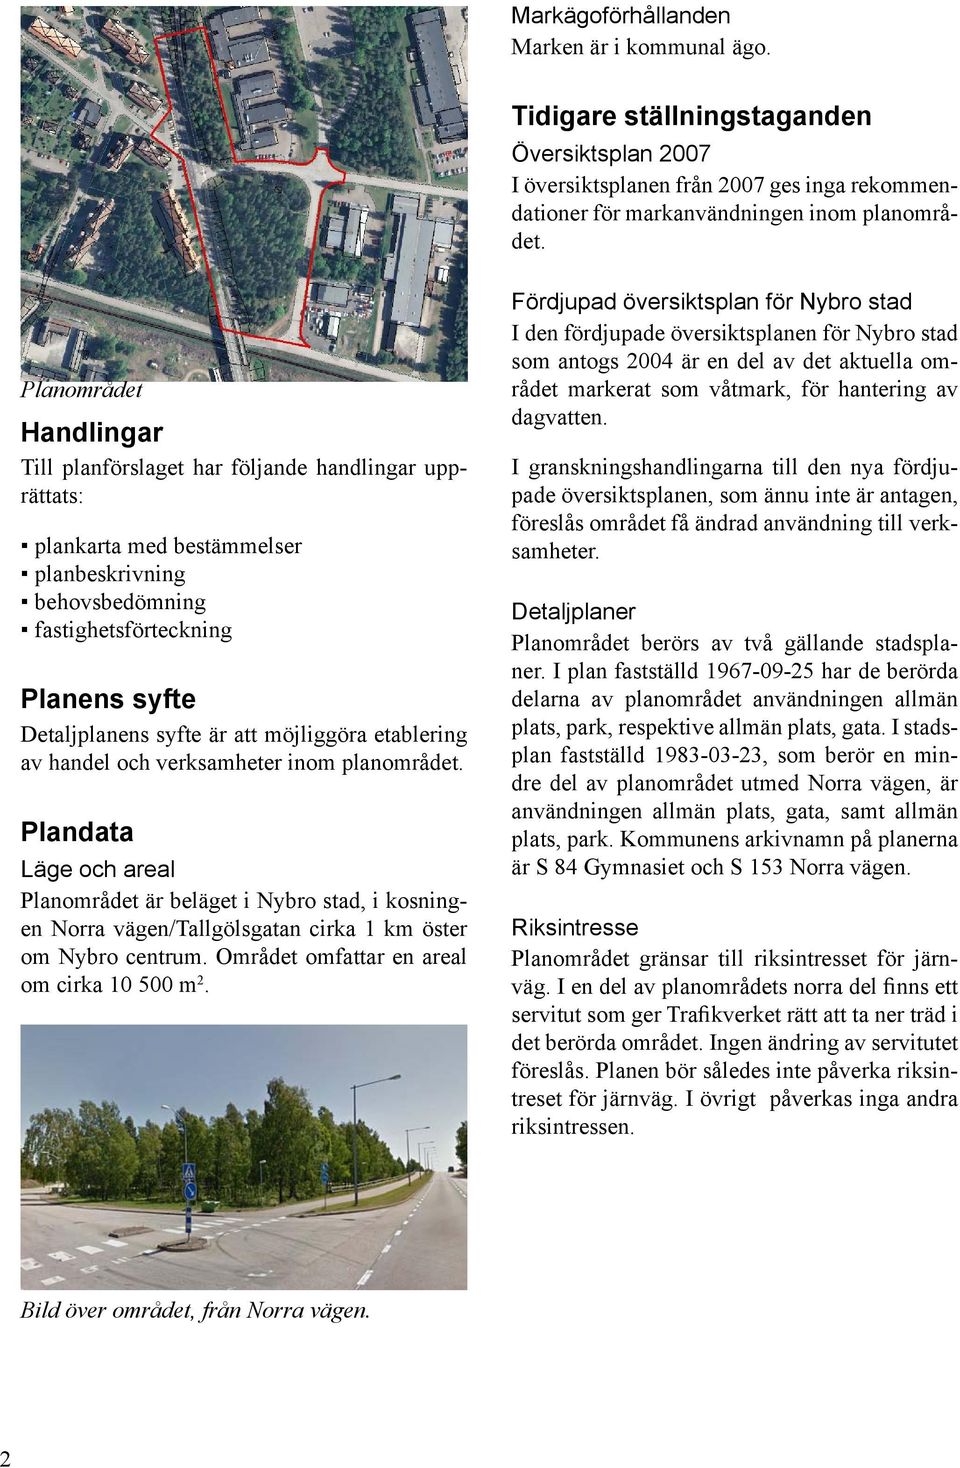 möjliggöra etablering av handel och verksamheter inom planområdet. landata Läge och areal lanområdet är beläget i Nybro stad, i kosningen Norra vägen/tallgölsgatan cirka 1 km öster om Nybro centrum.